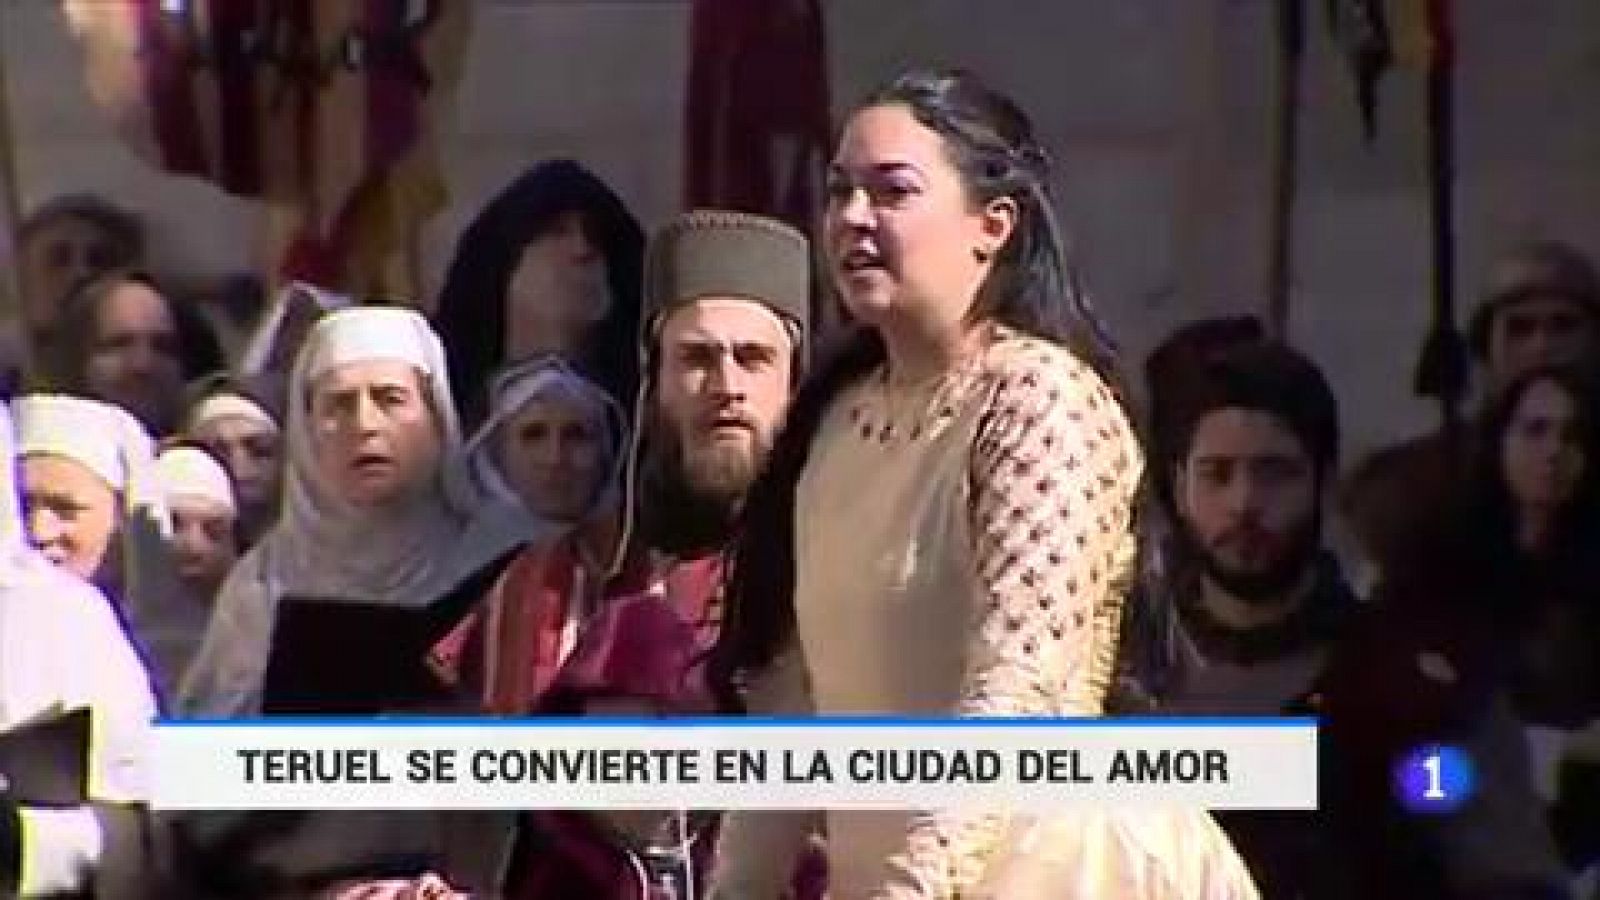 La leyenda del amor eterno en Teruel - RTVE.es